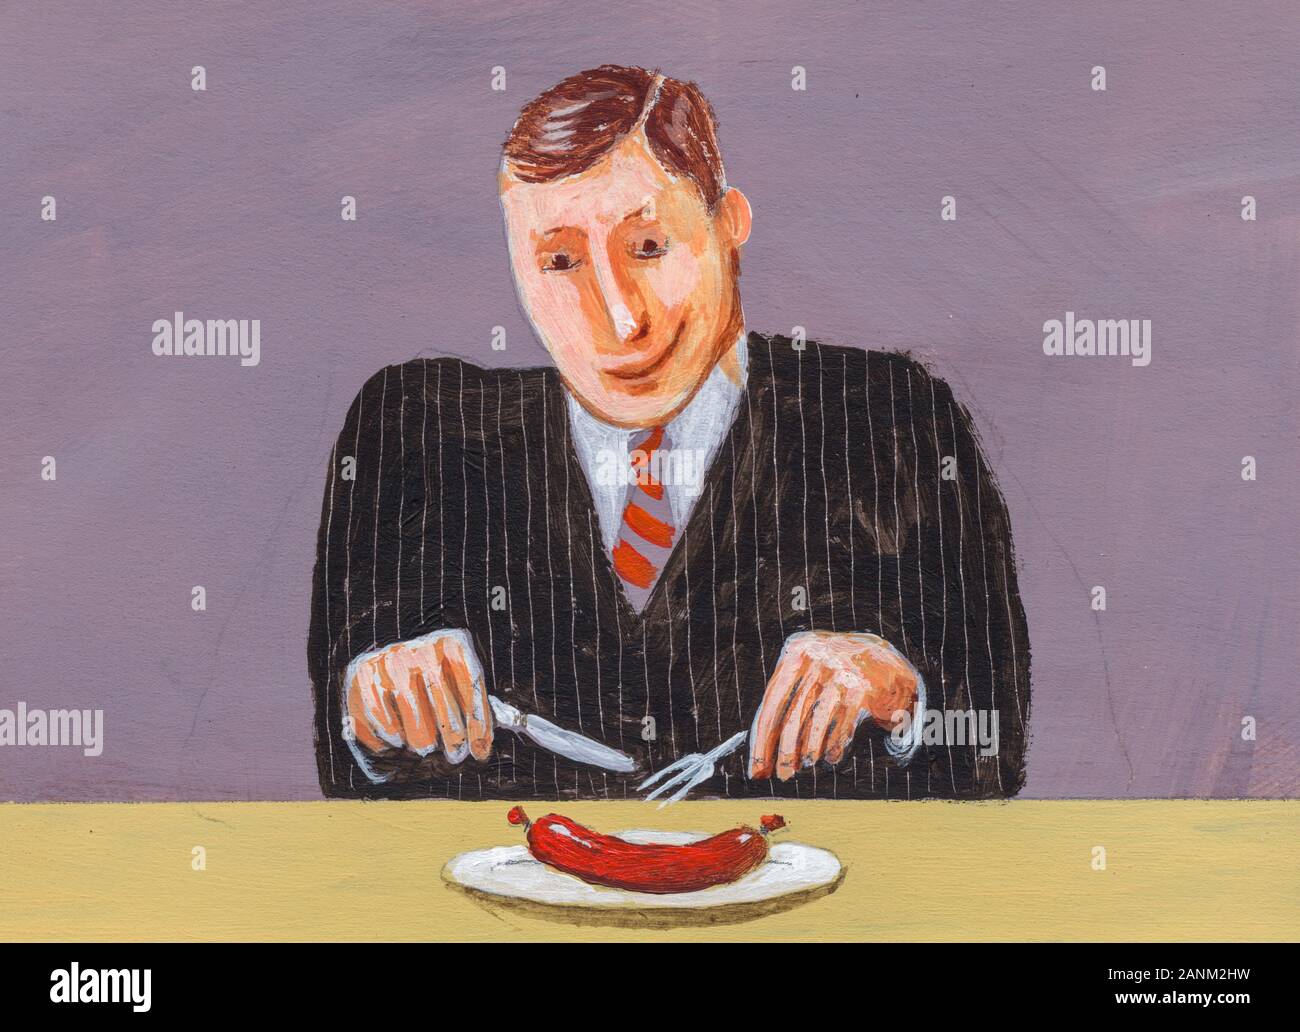 Mann isst Würstchen - Man eating sausage Stock Photo